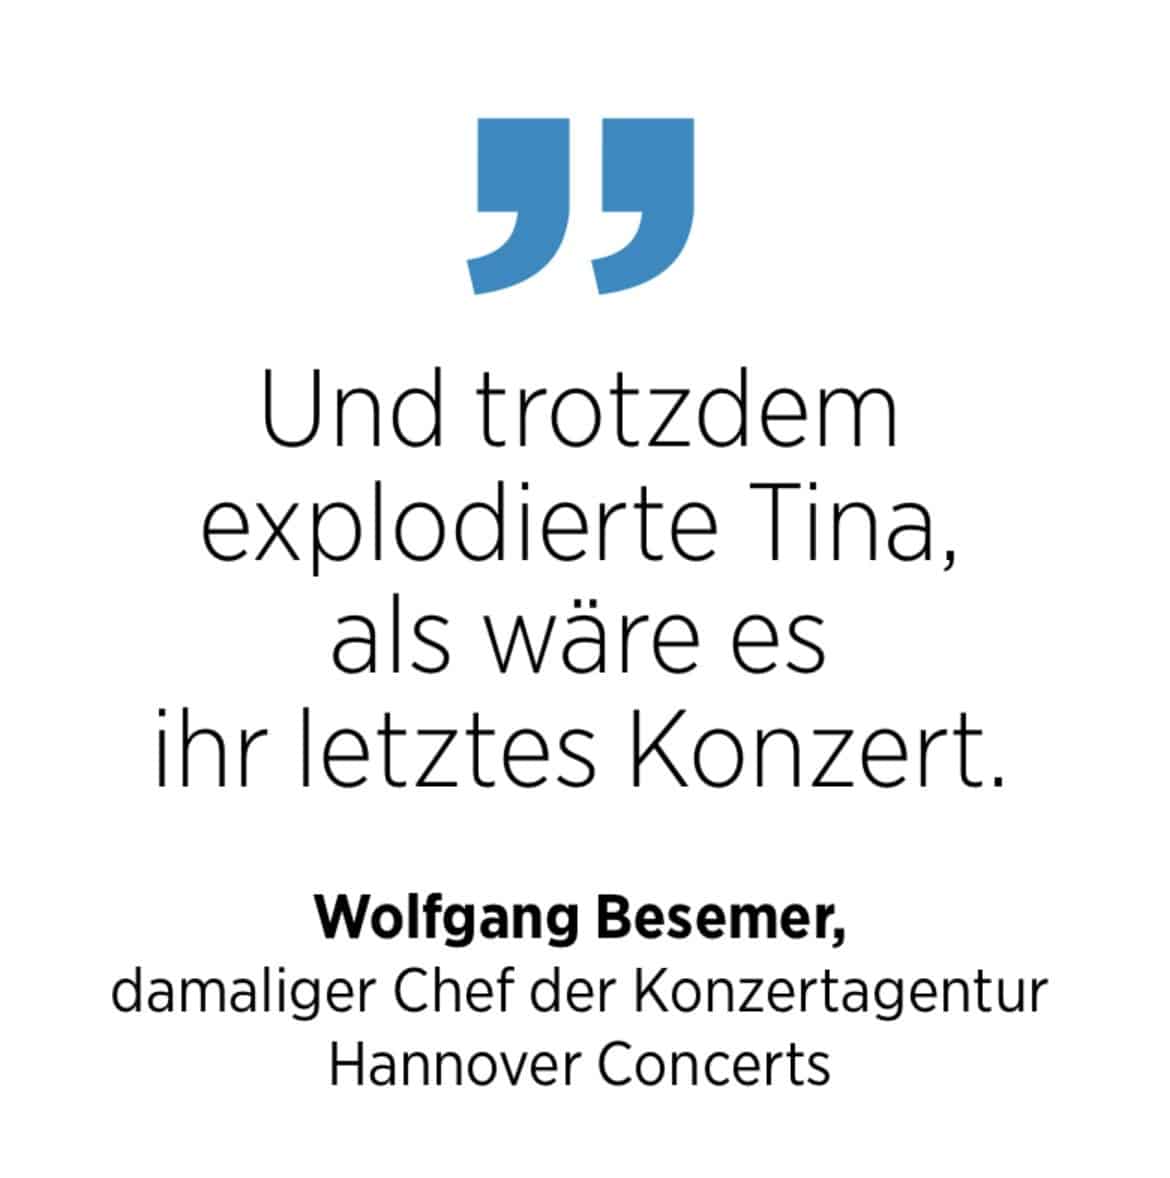 Zitat zu Tina Turner von Wolfgang Besemer, damaliger Chef der Konzertagentur Hannover Concerts